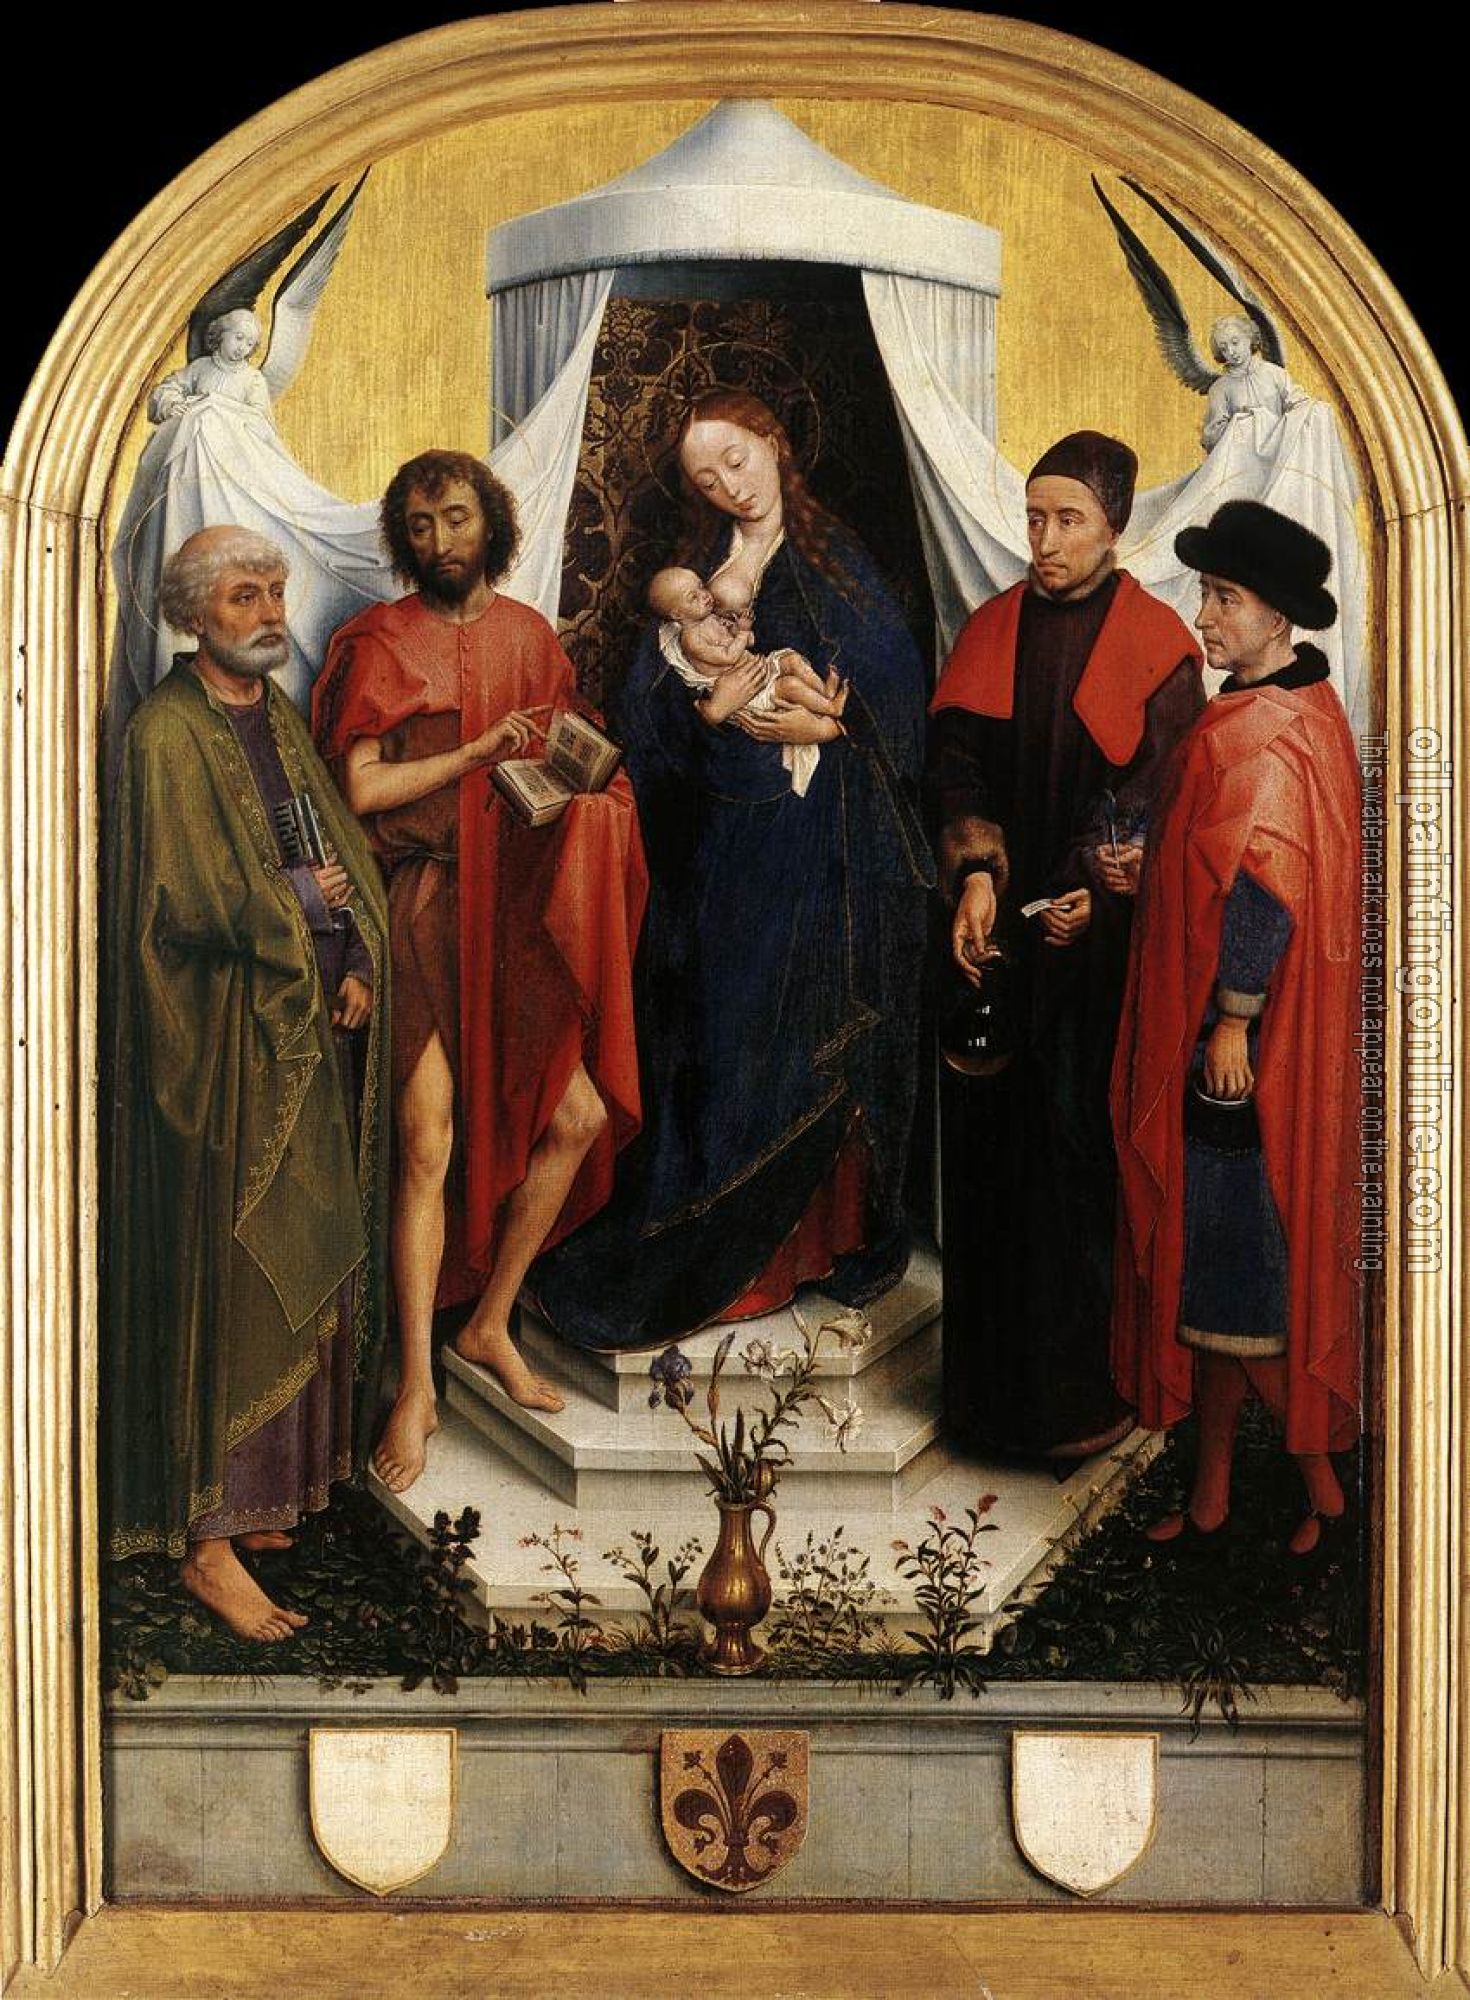 Weyden, Rogier van der - Virgin with the Child and Four Saints